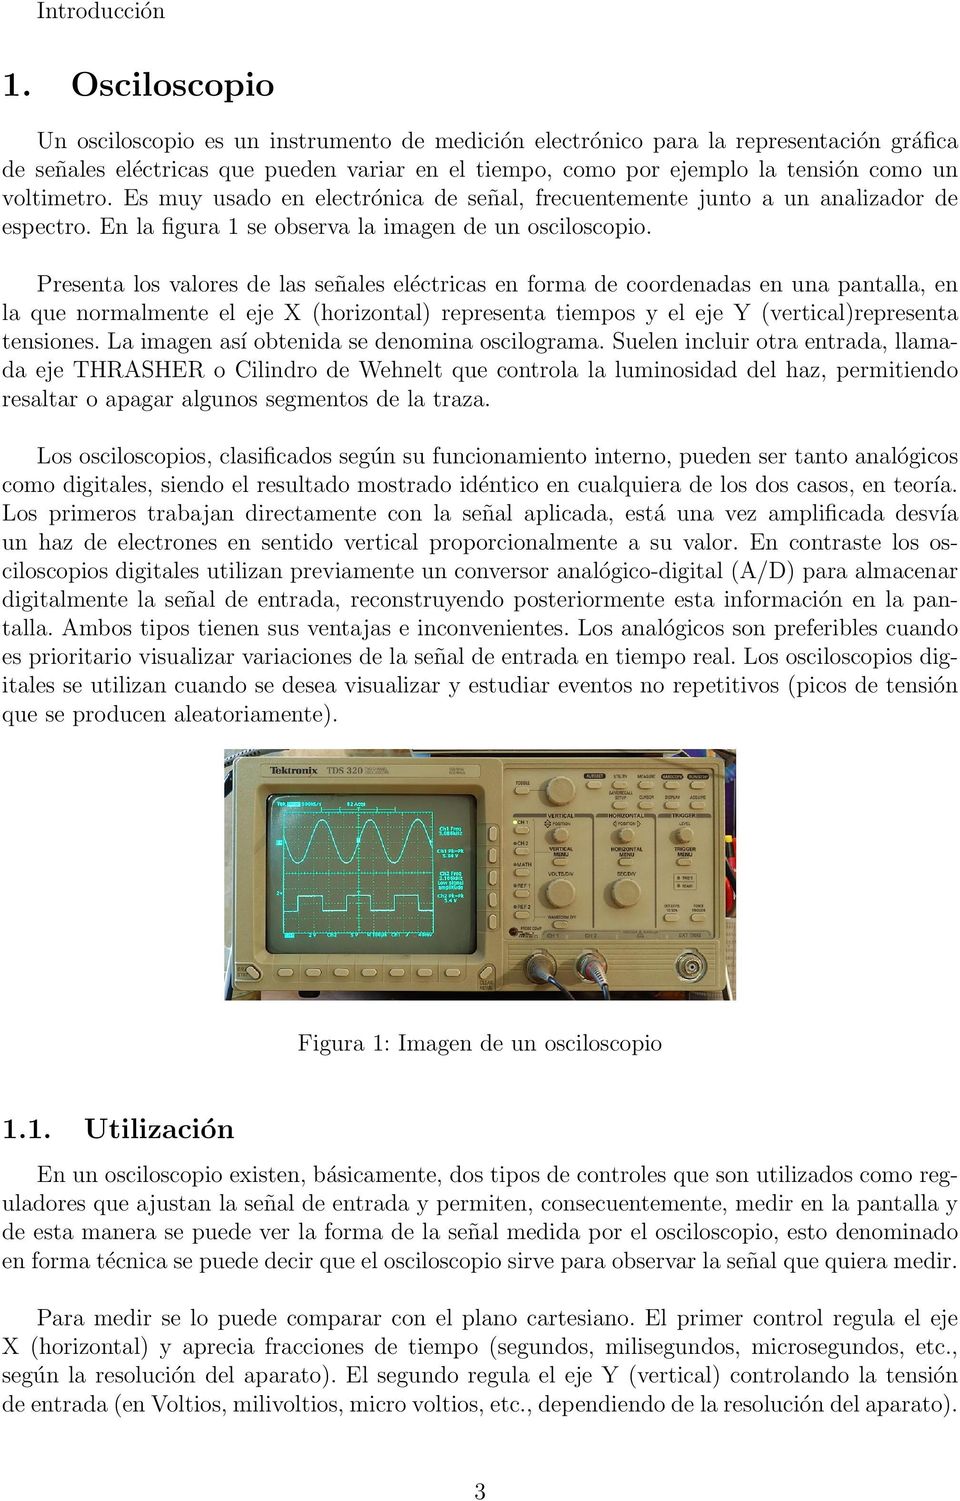 voltimetro. Es muy usado en electrónica de señal, frecuentemente junto a un analizador de espectro. En la figura 1 se observa la imagen de un osciloscopio.